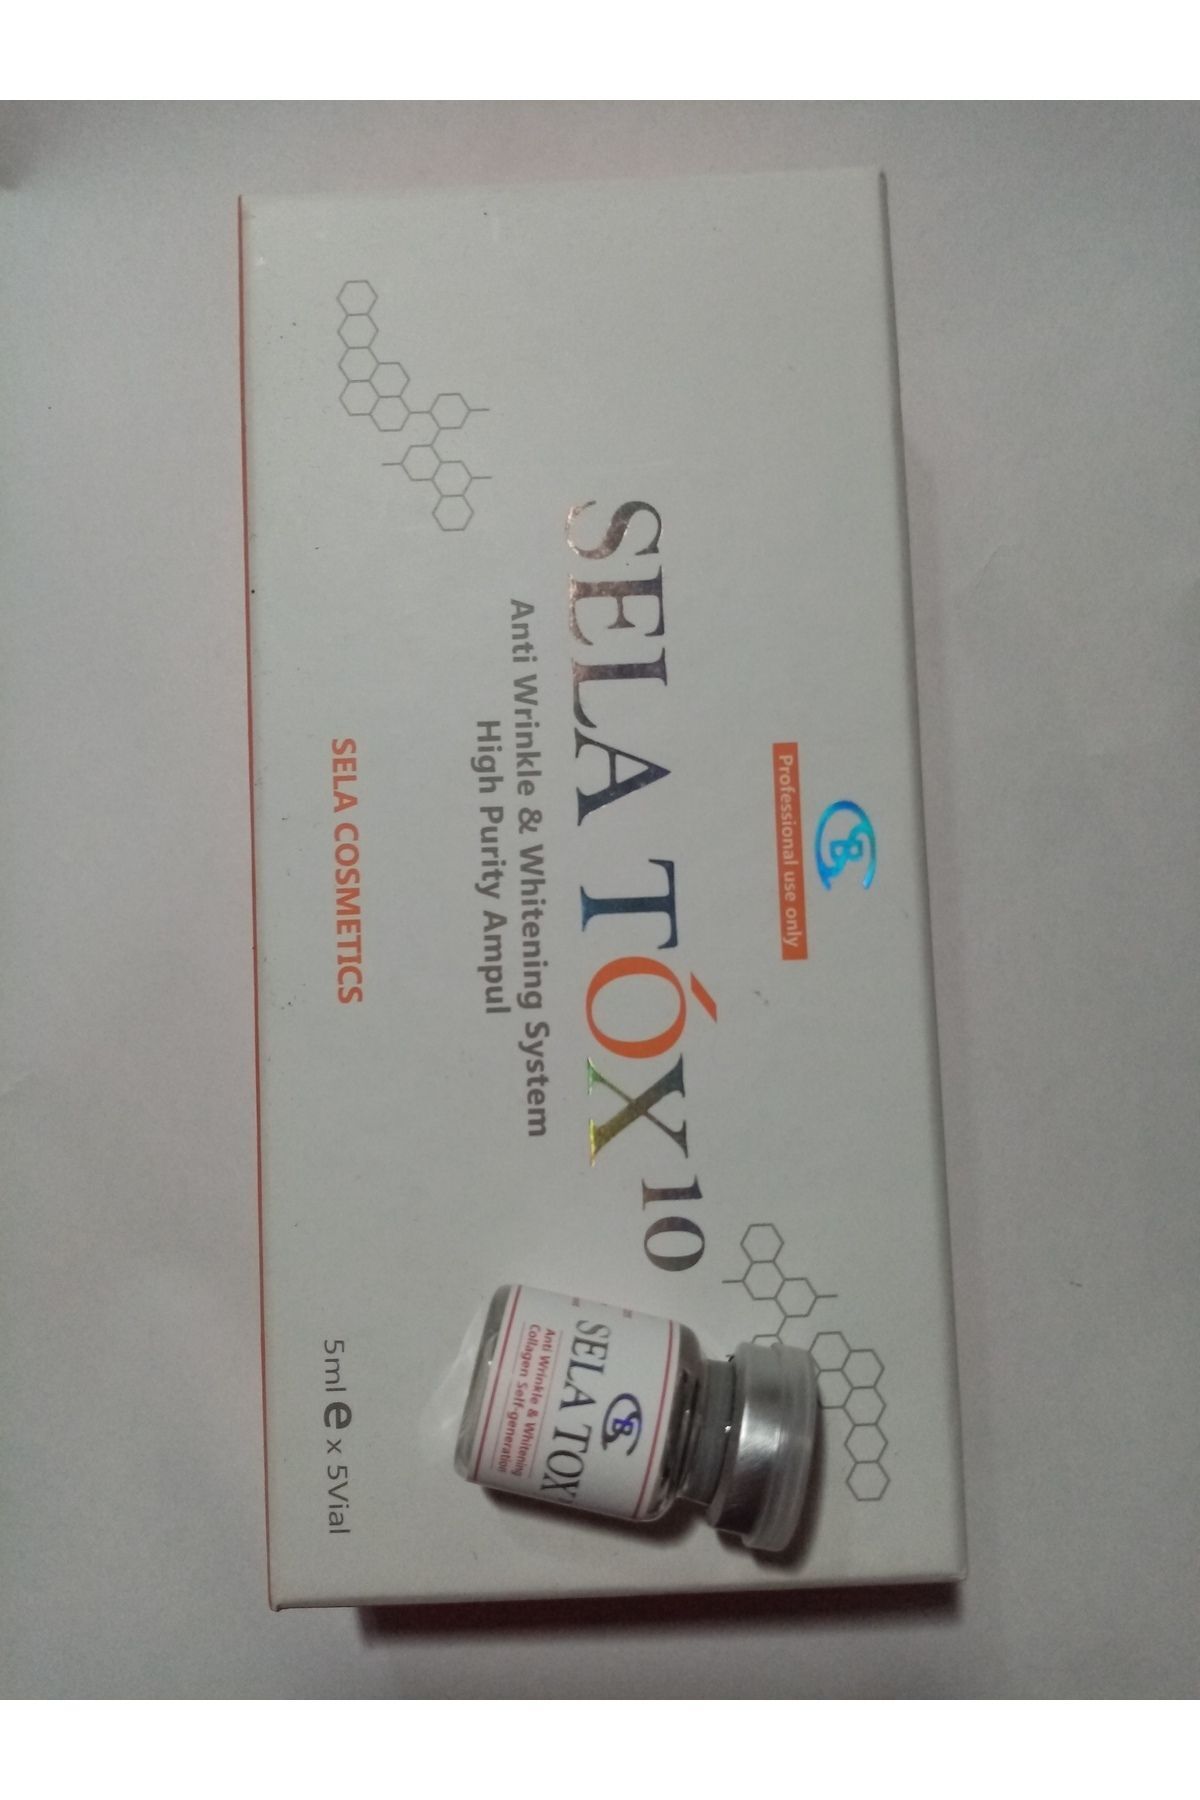 Selatox Gençlik Aşısı Mezoterapi [1 Flakon Fiyatıdır]